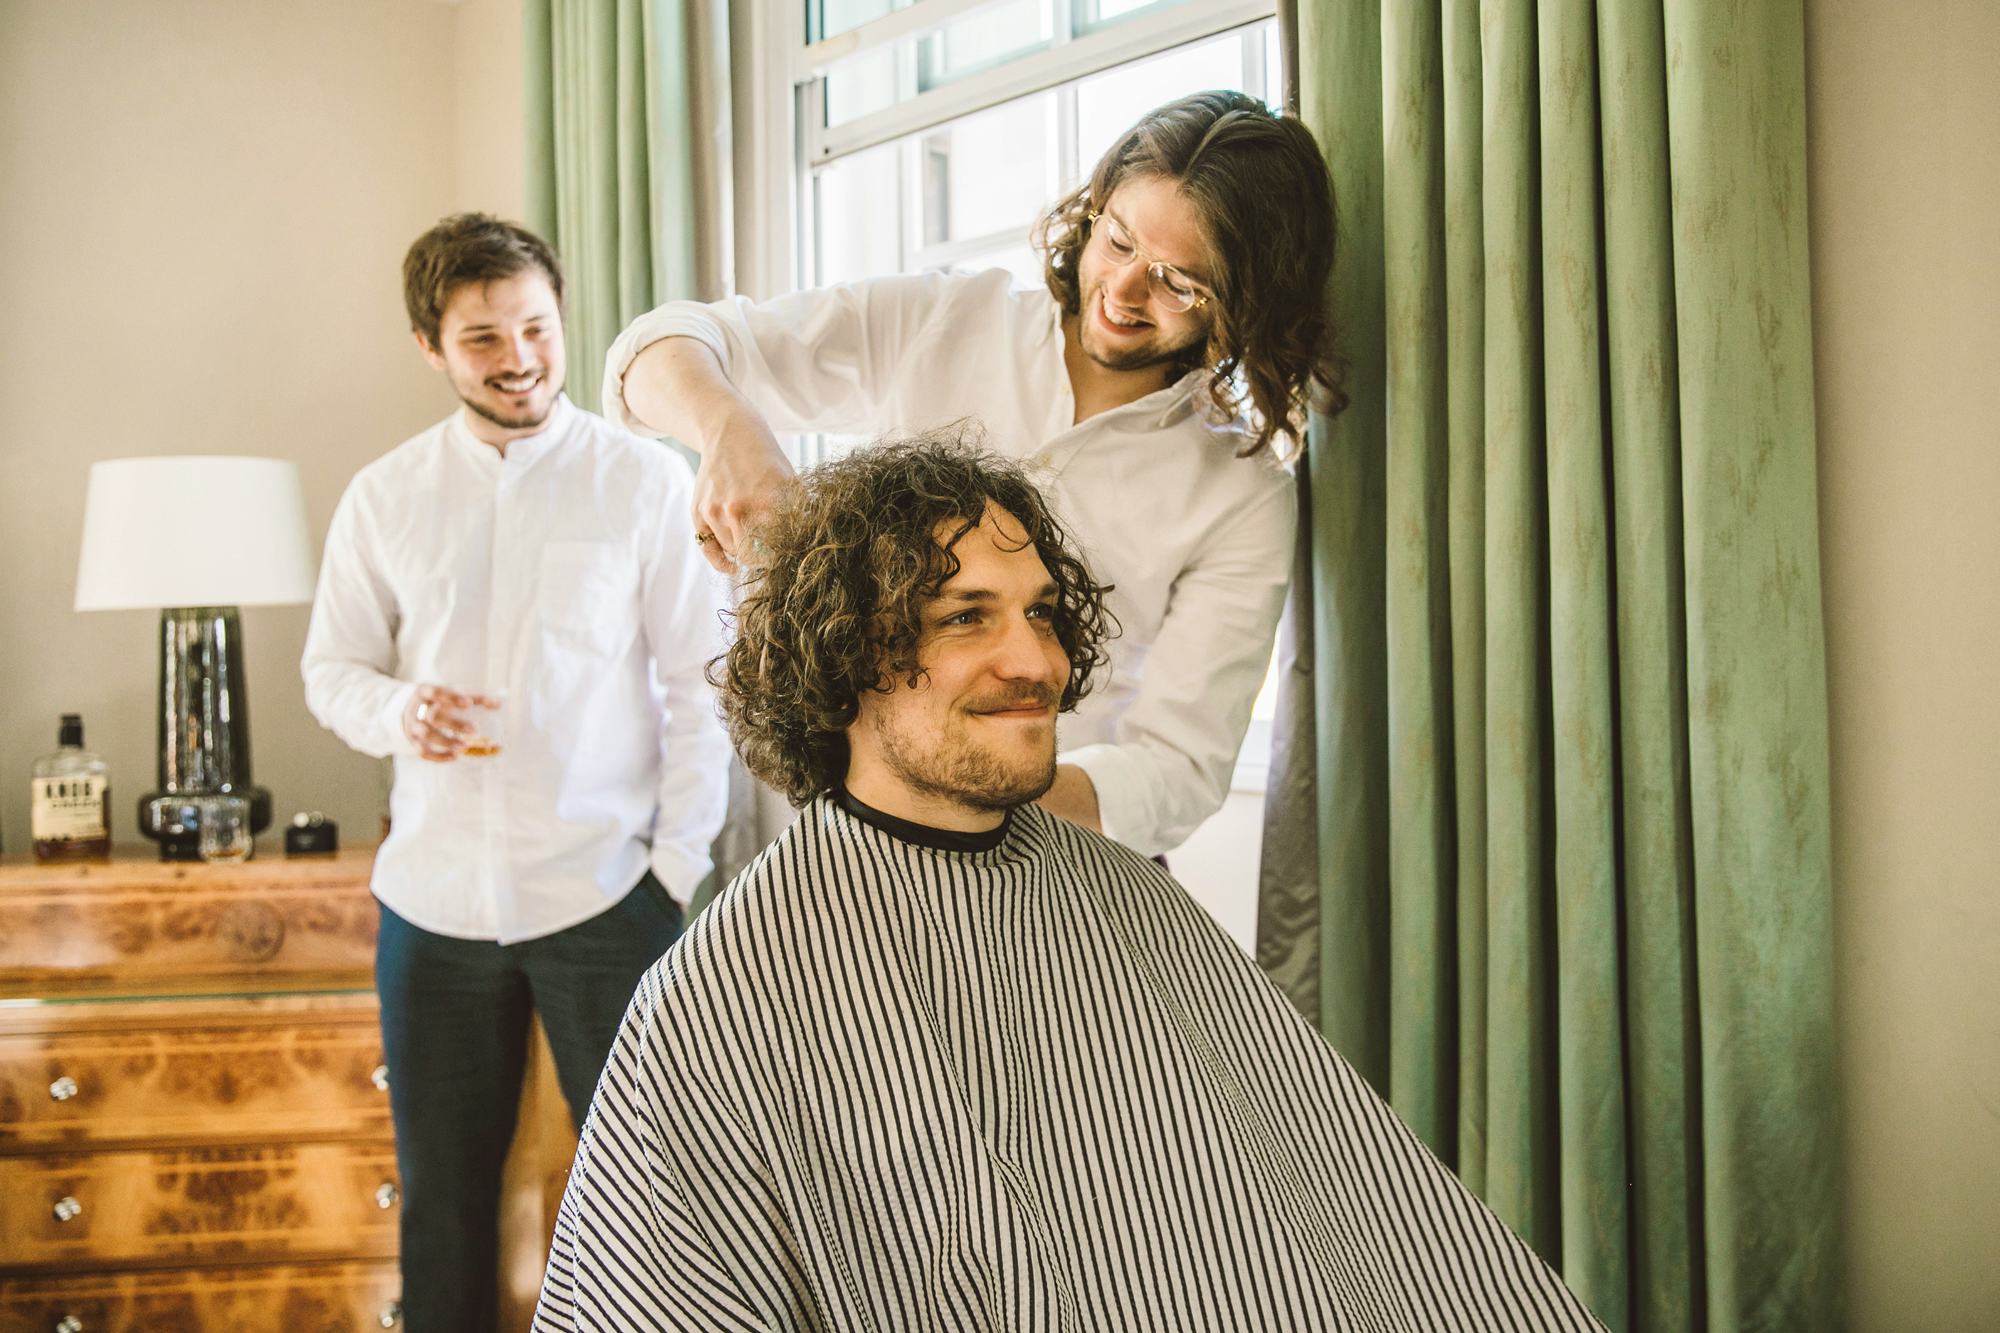 mobile barber grooming weddings